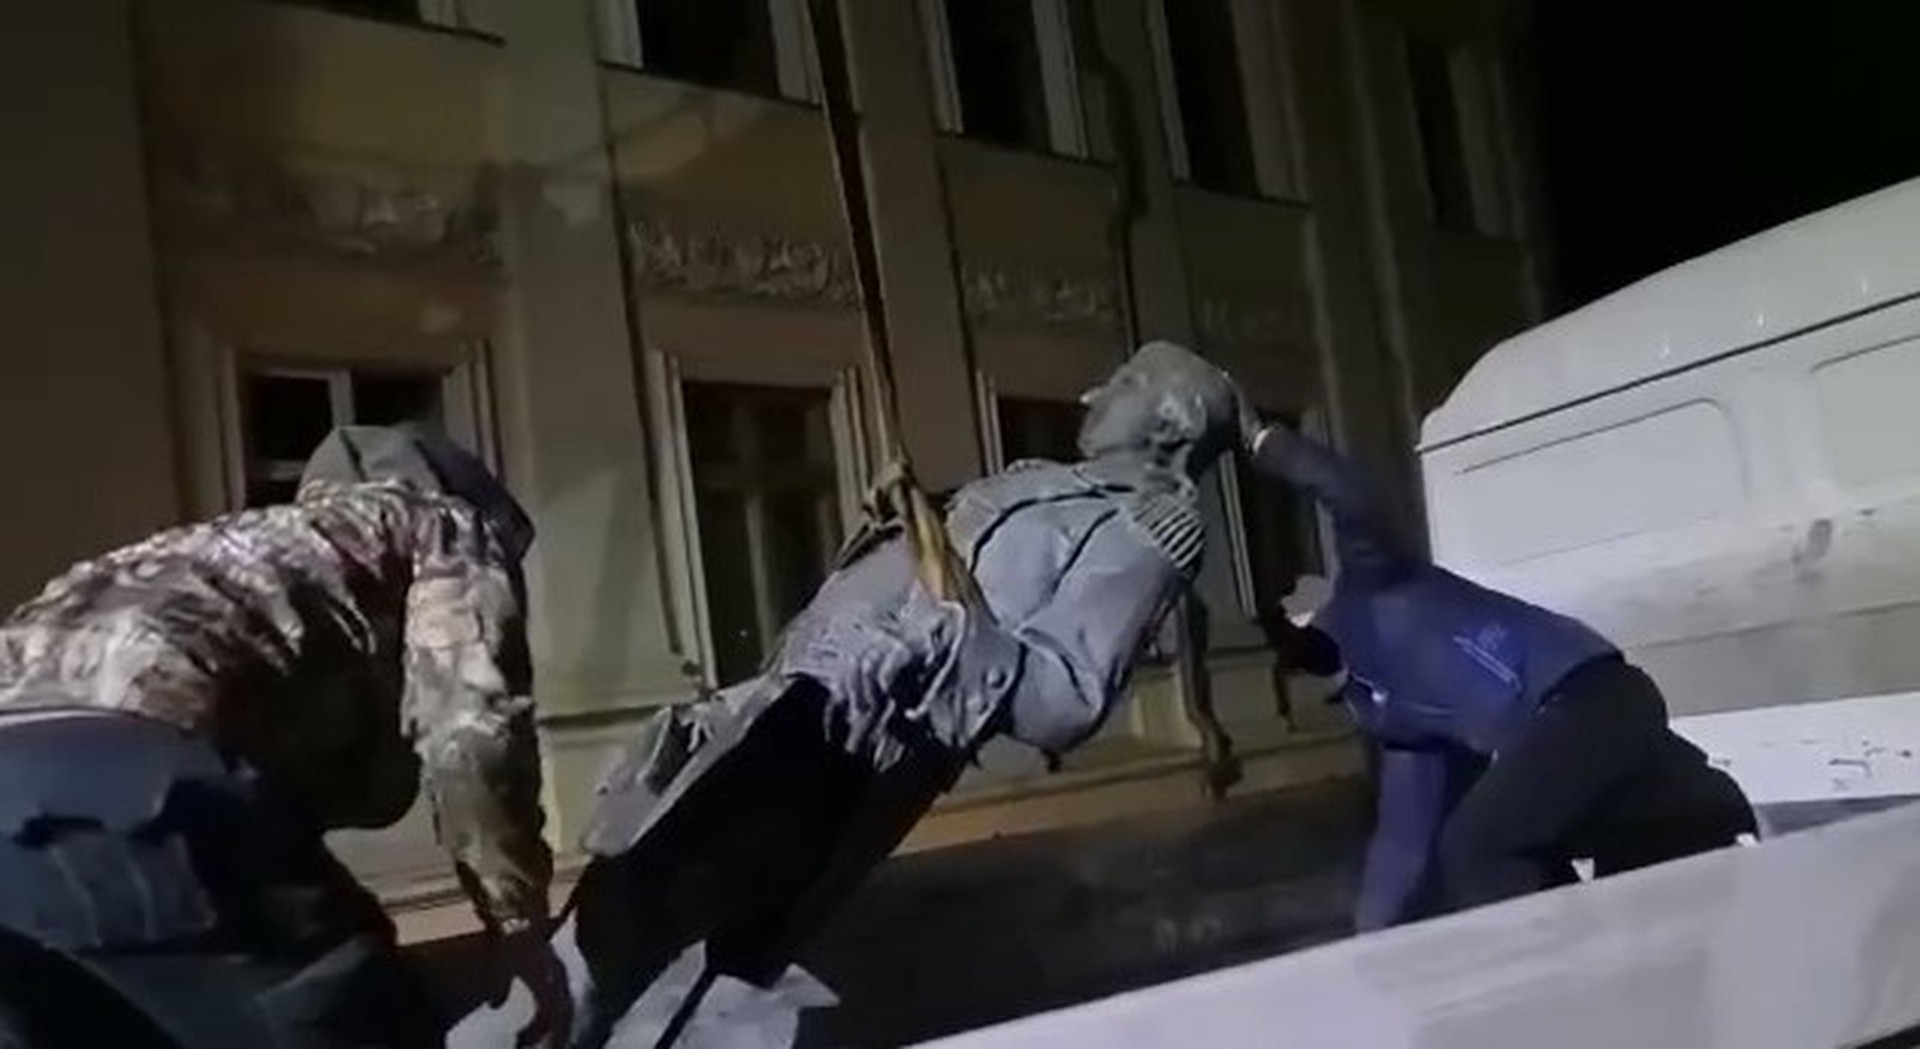 В Одессе приступили к демонтажу памятника Екатерине II